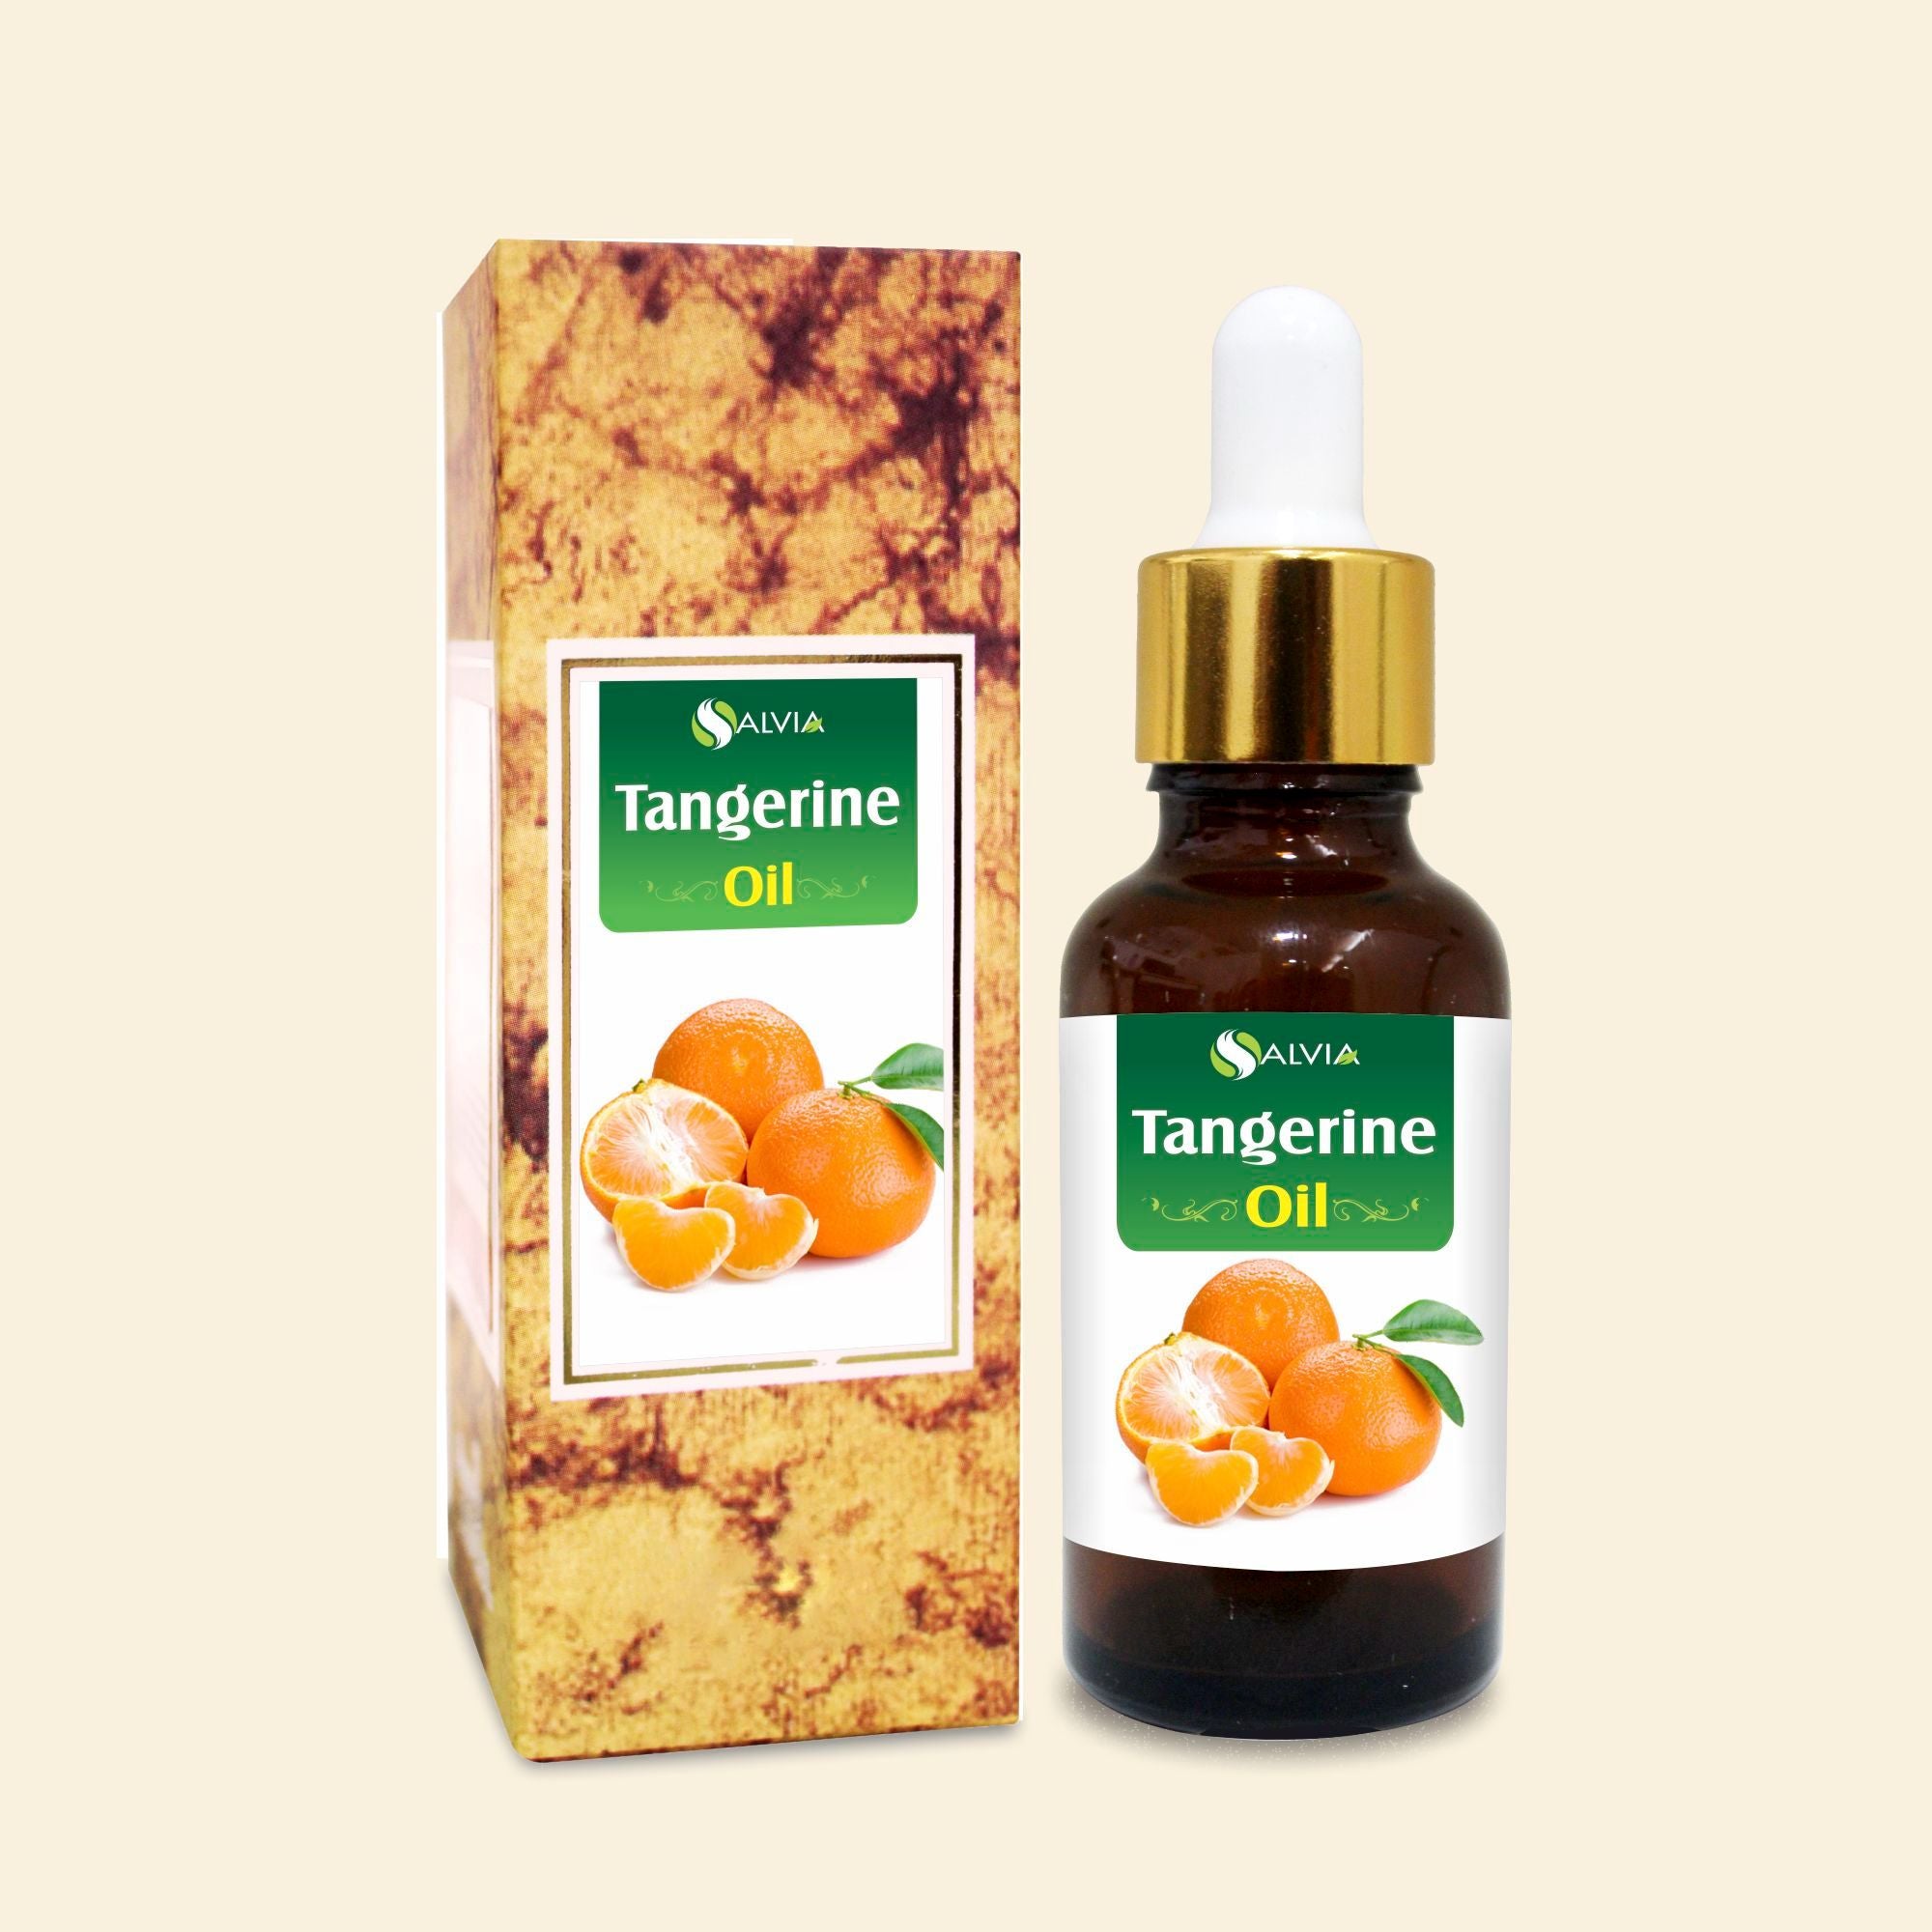 Salvia Natural Essential Oils Tangerine Oil (Tagetes Minuta) Natural Essential Oil